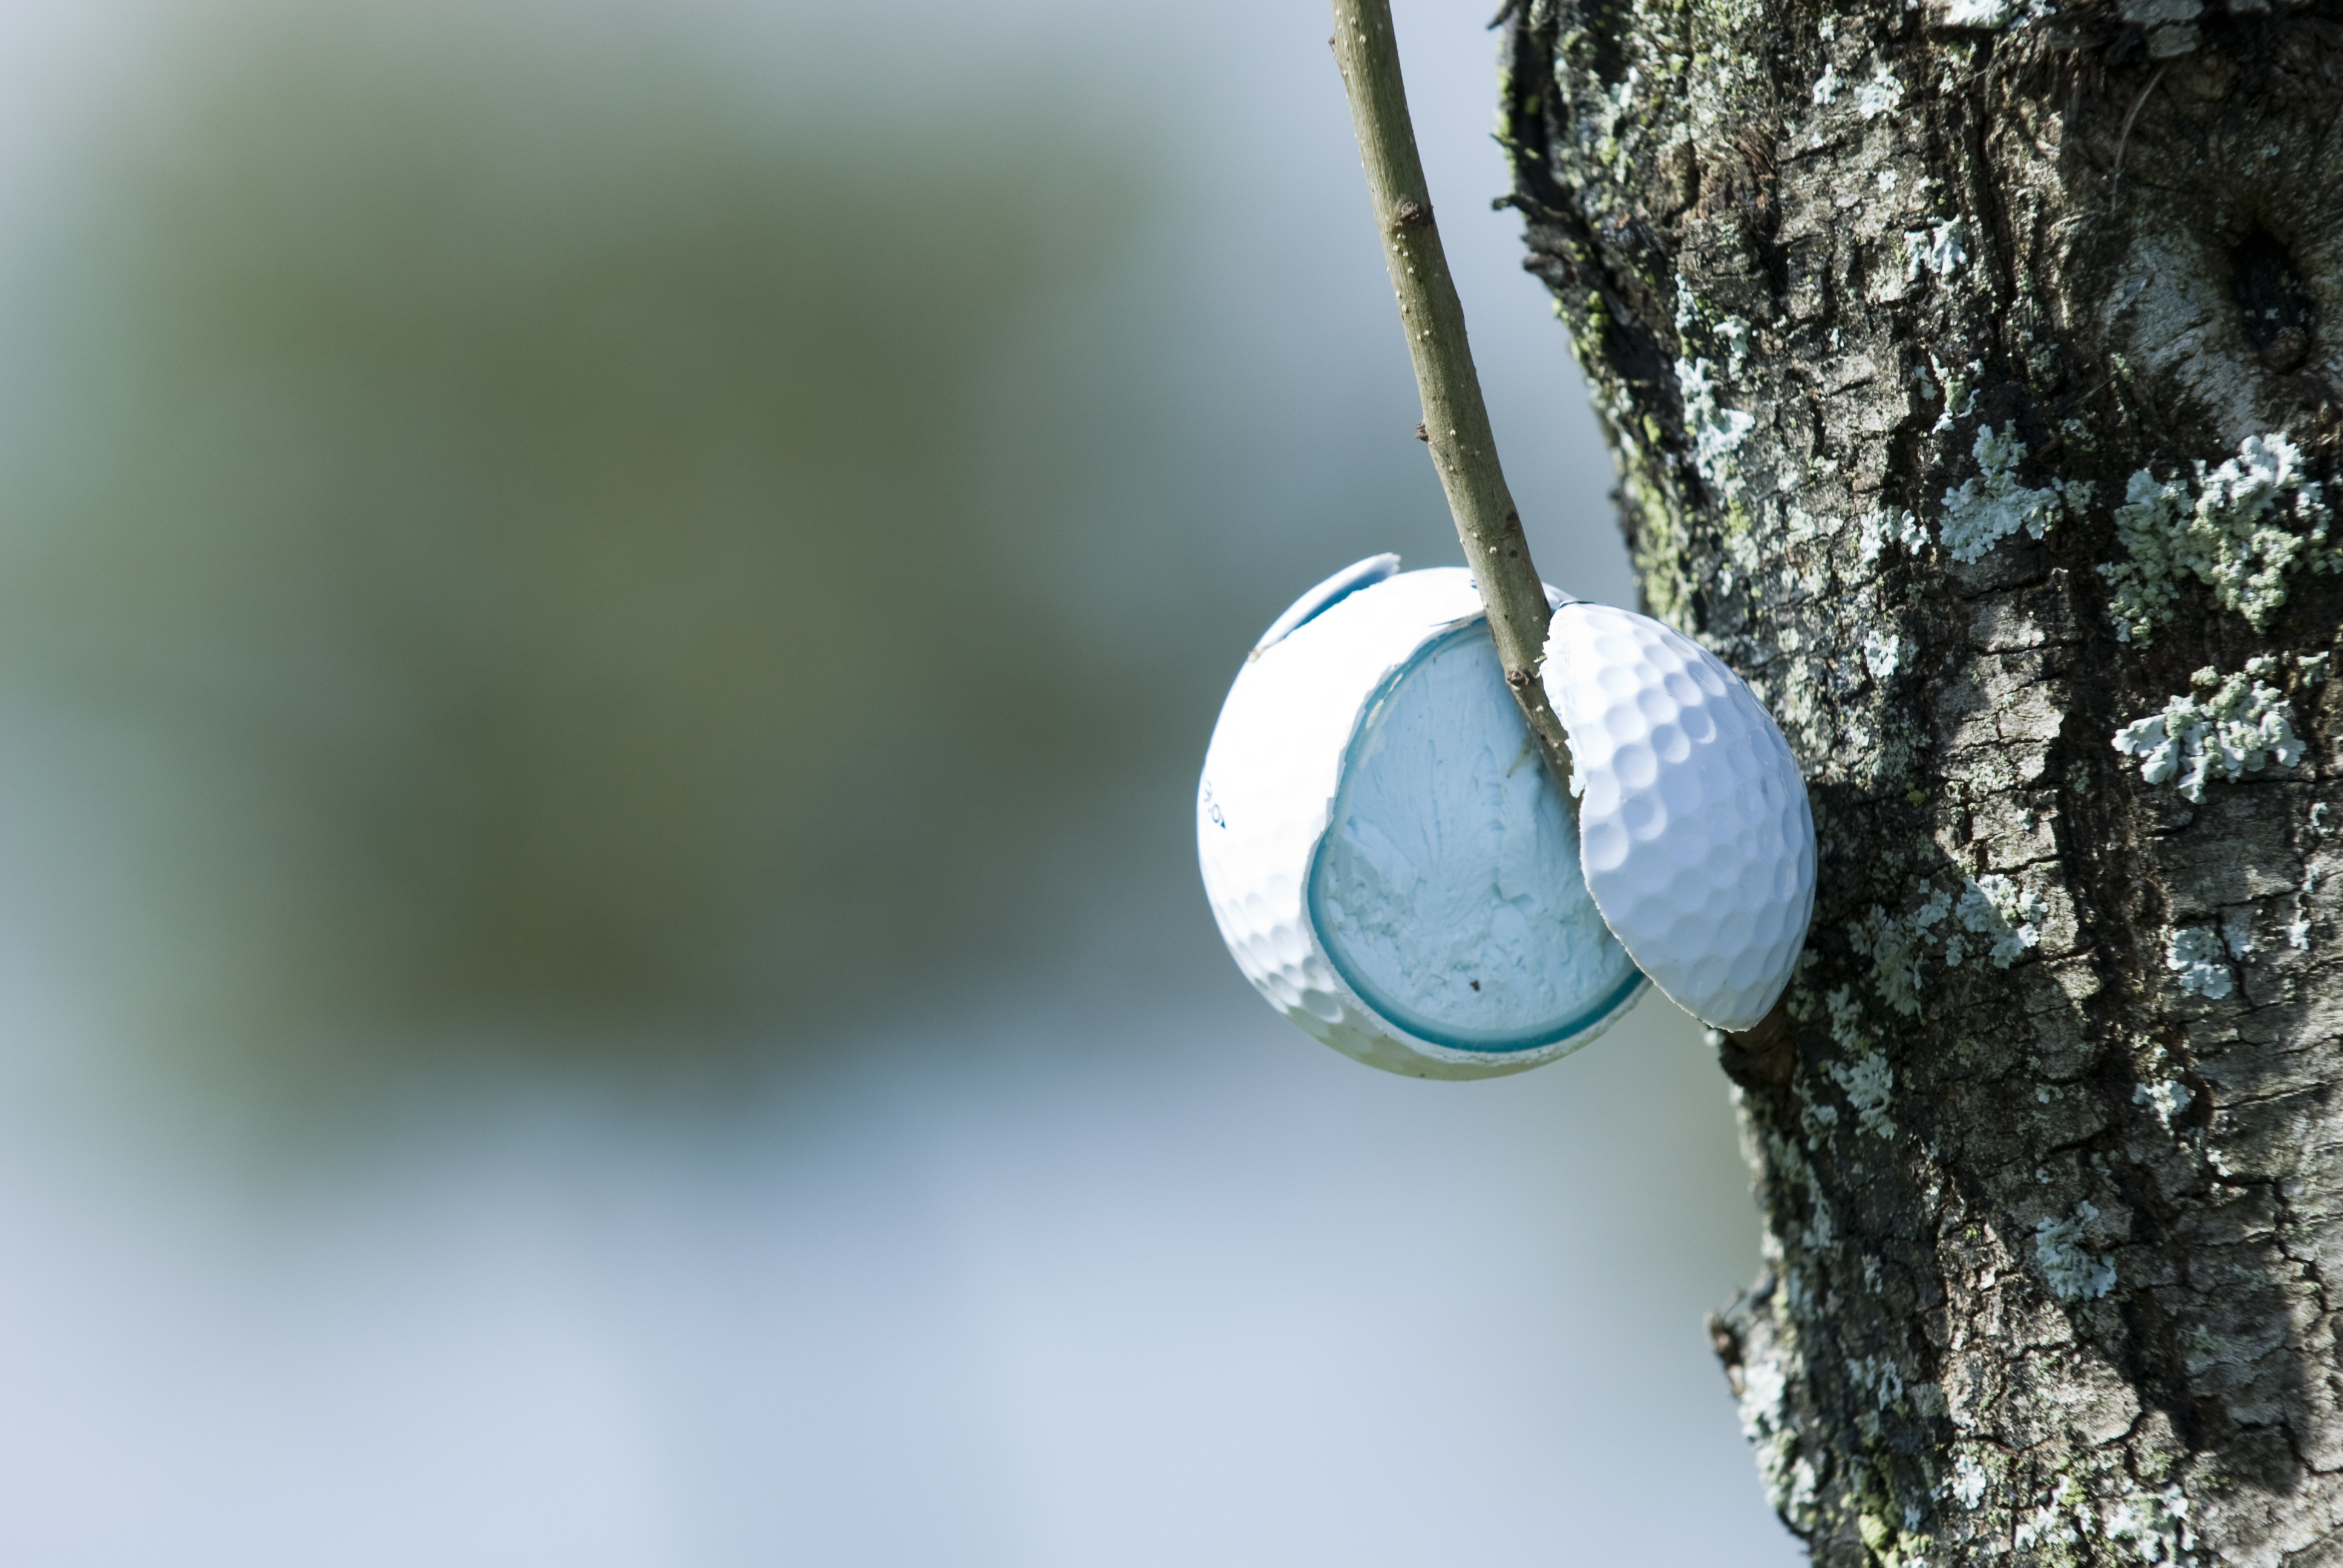 Broken golf ball in tree